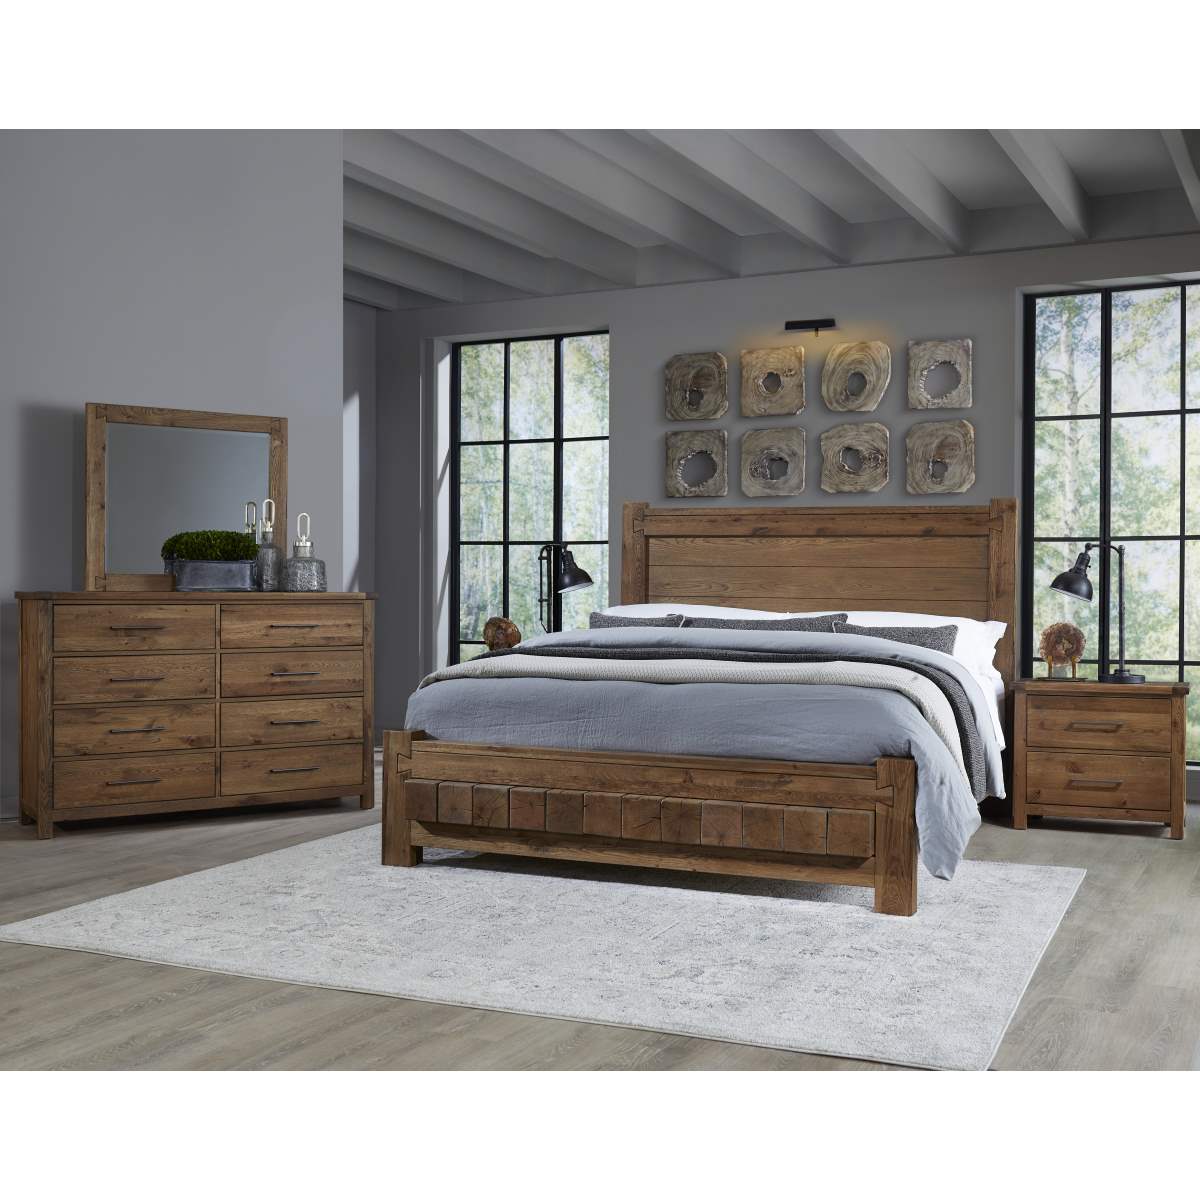 Vaughan-Bassett Dovetail Queen Block Bed, Dresser, Mirror and Nightstand